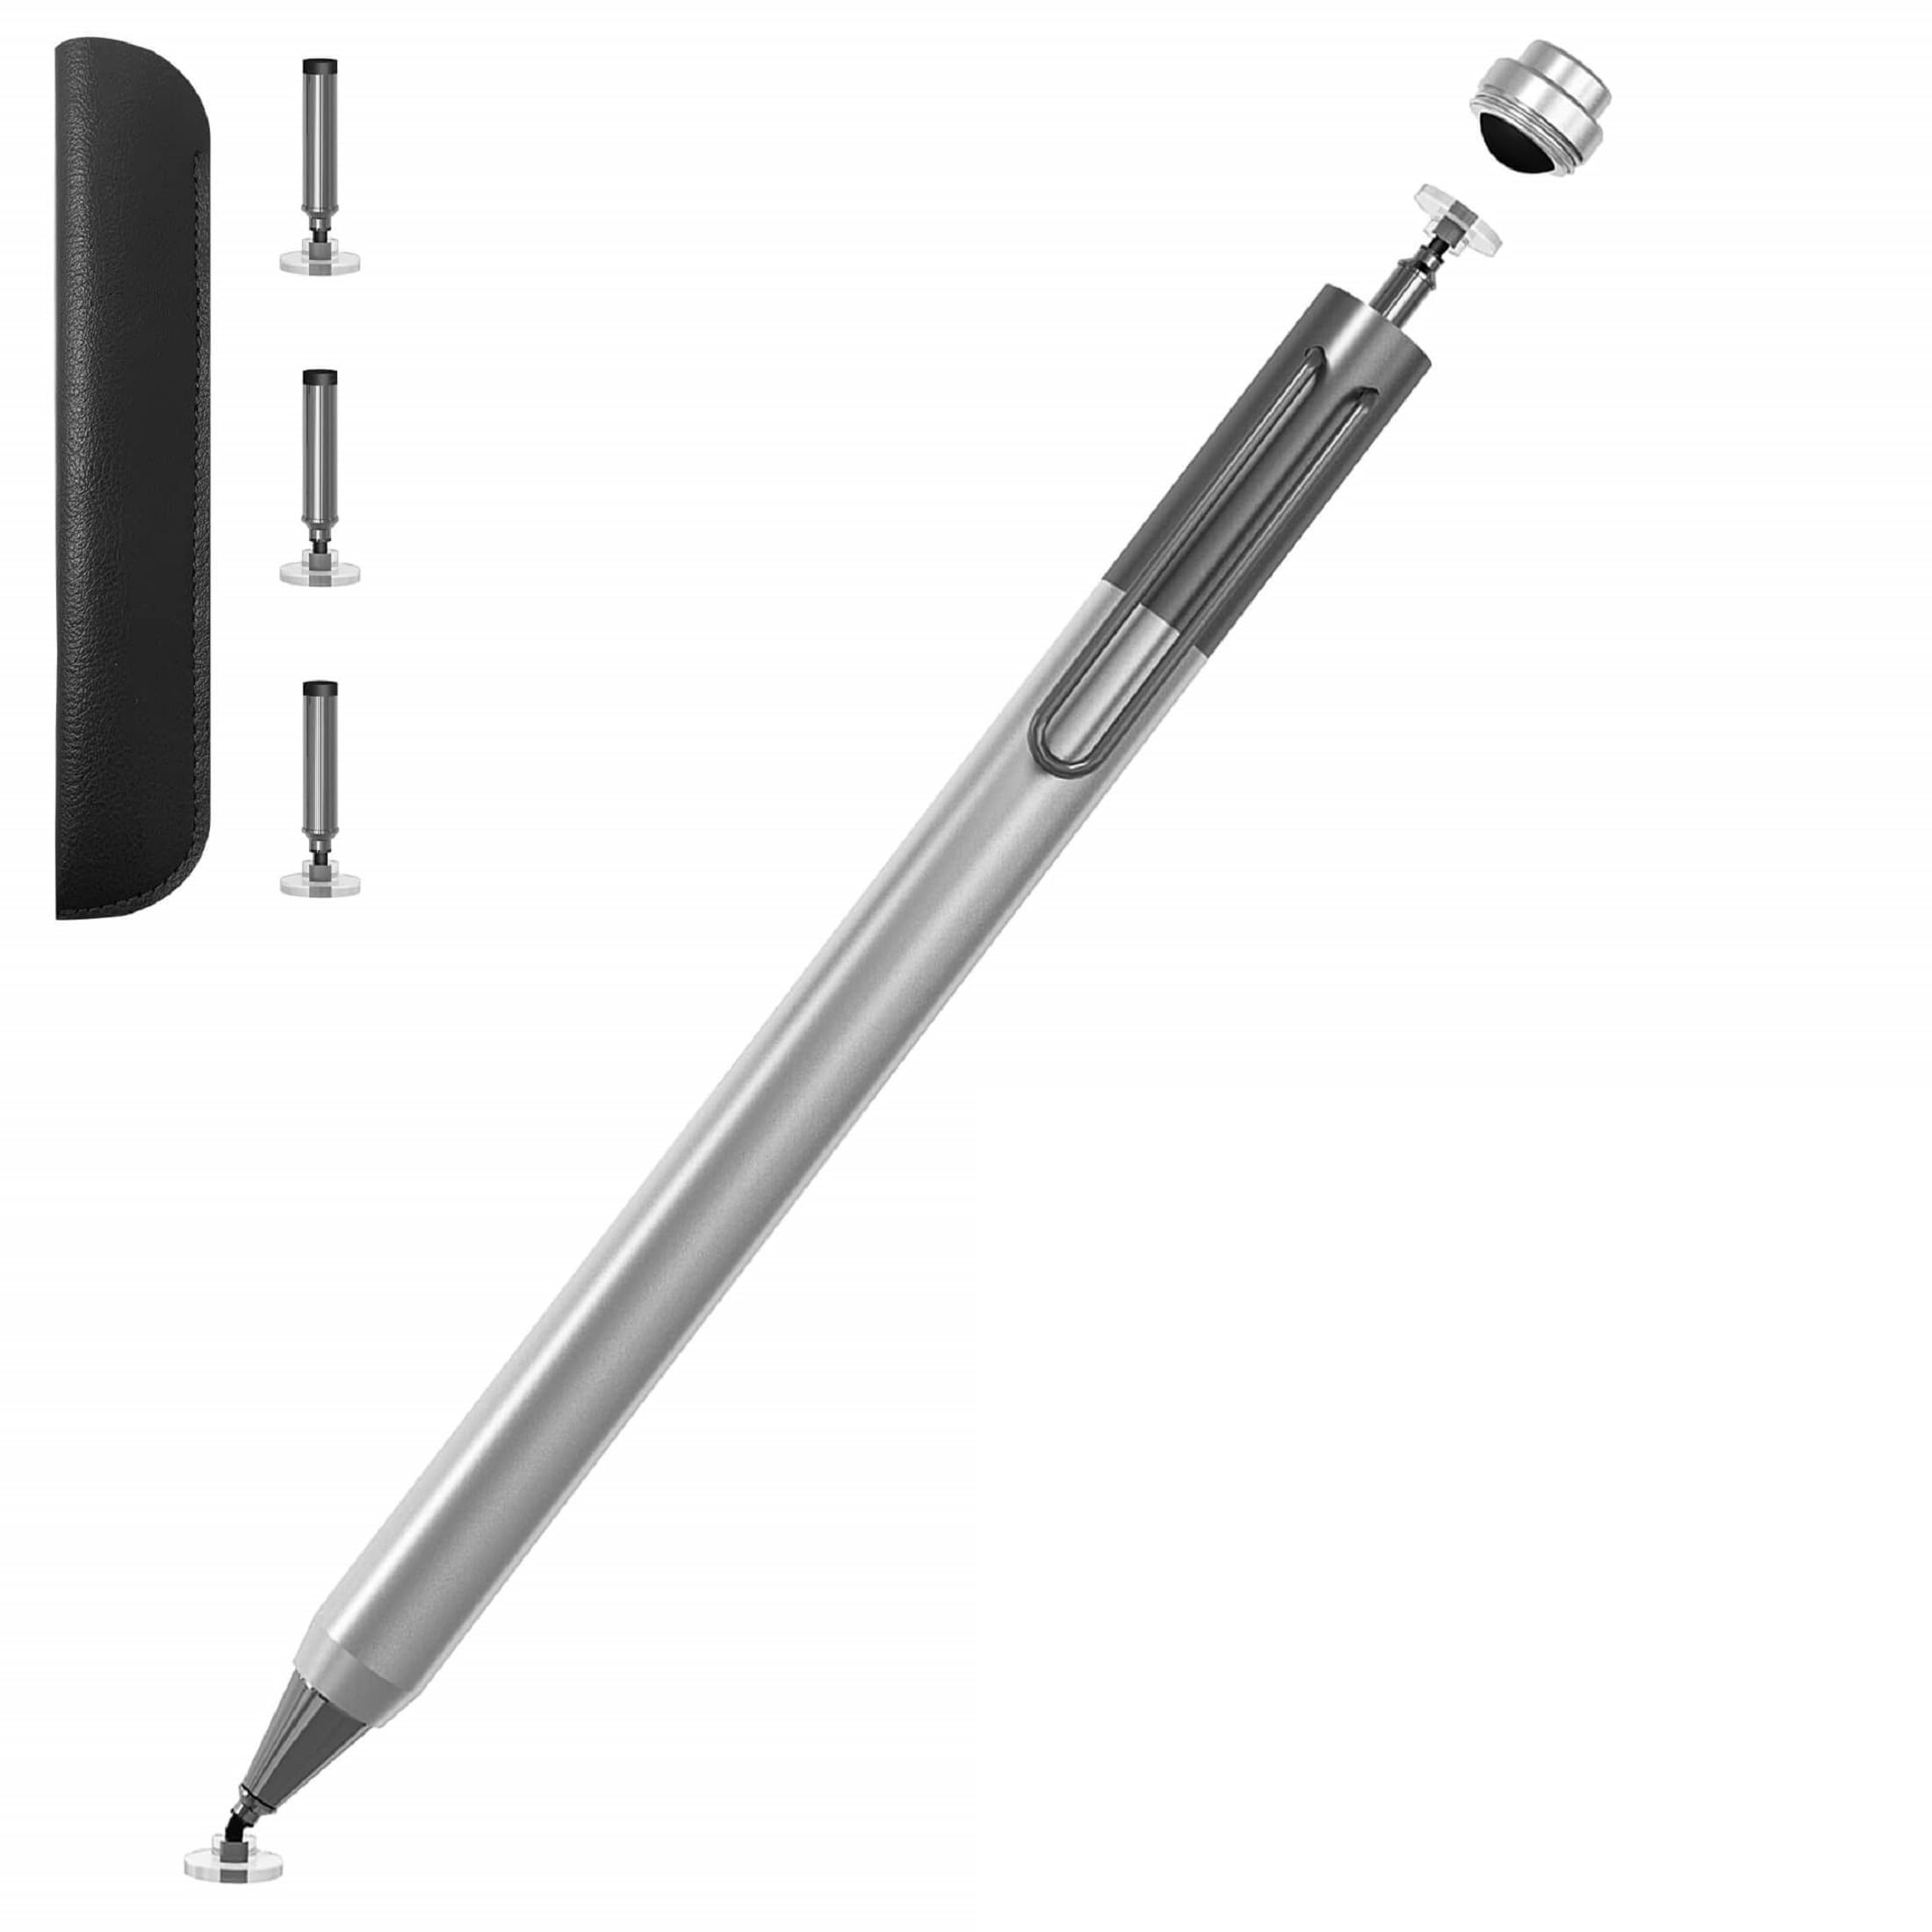 Touchscreen Stift, Clip-Design Kapazitive Disc-Spitze Pencil Eingabestift Hochempfindlicher Kapazitiver Stifte für Apple iPad/Smartphone/Samsung/Galaxy Tablet Allen Touchscreens